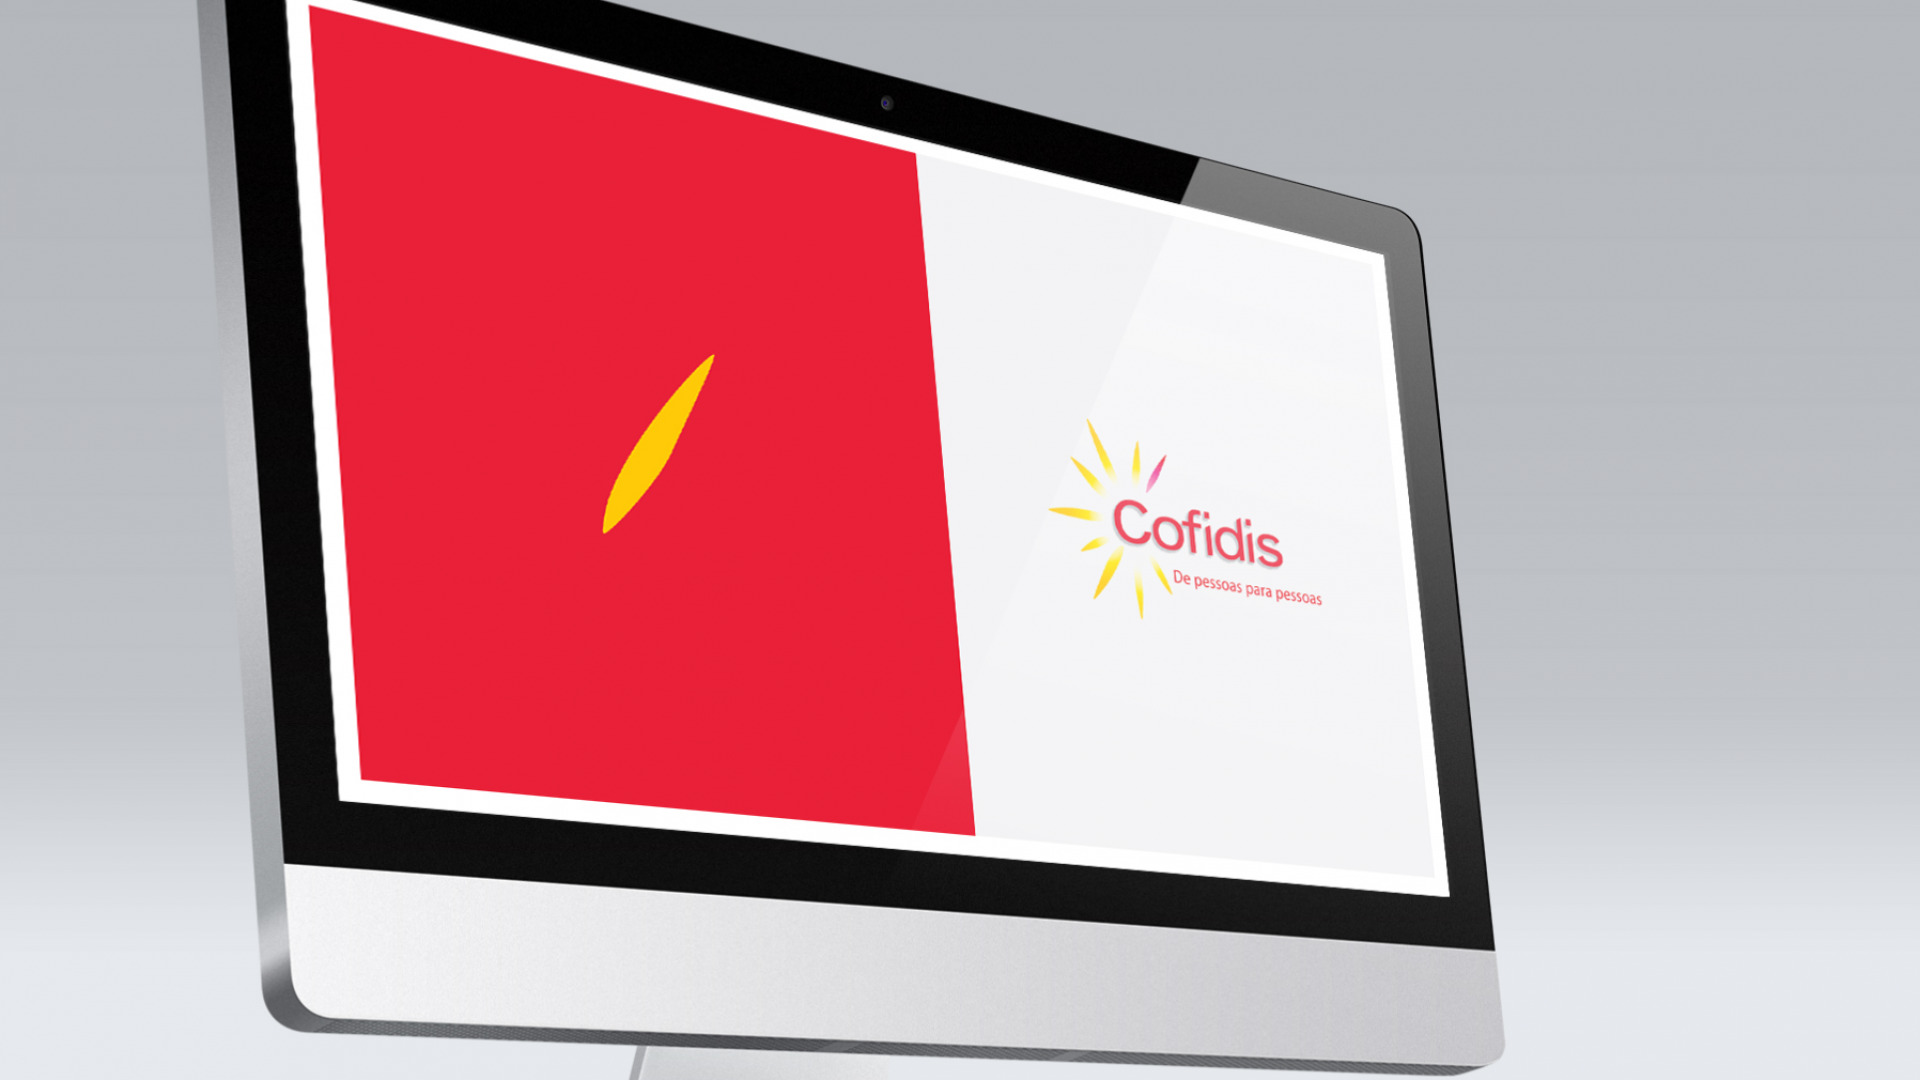 Cofidis - Financial Services